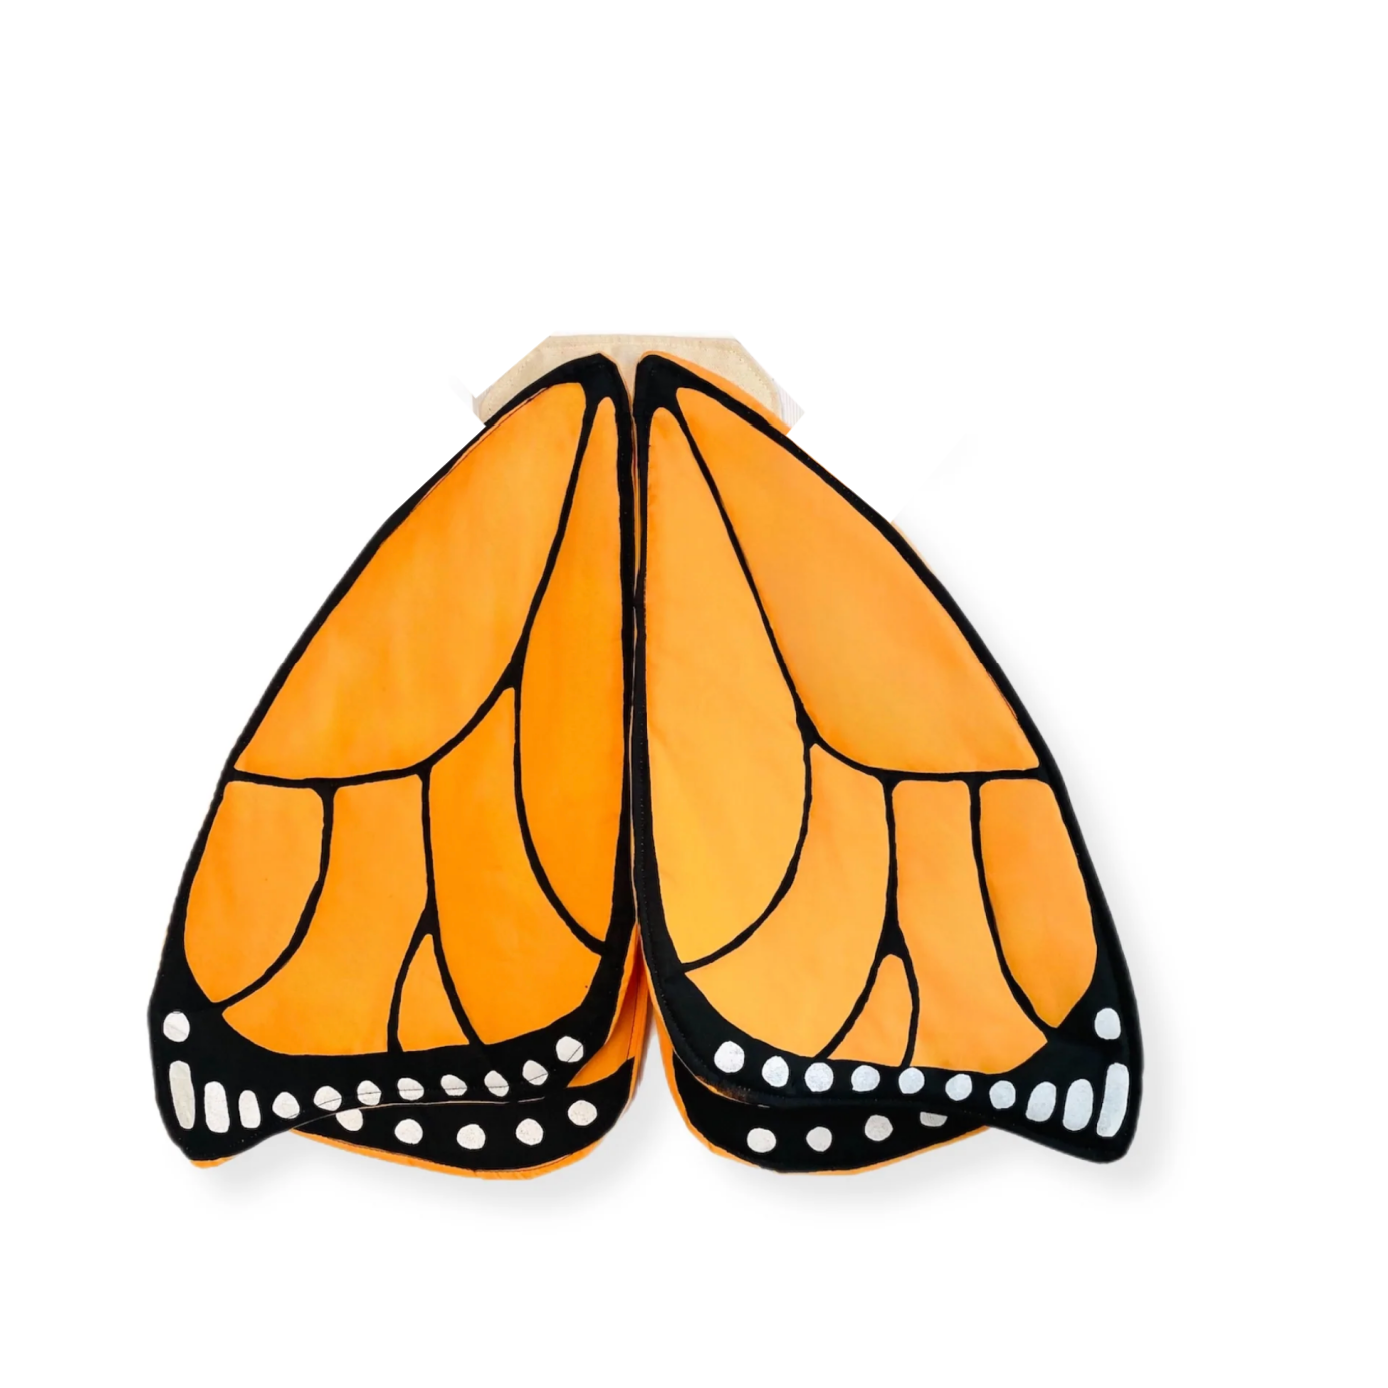 monarch butterfly dress